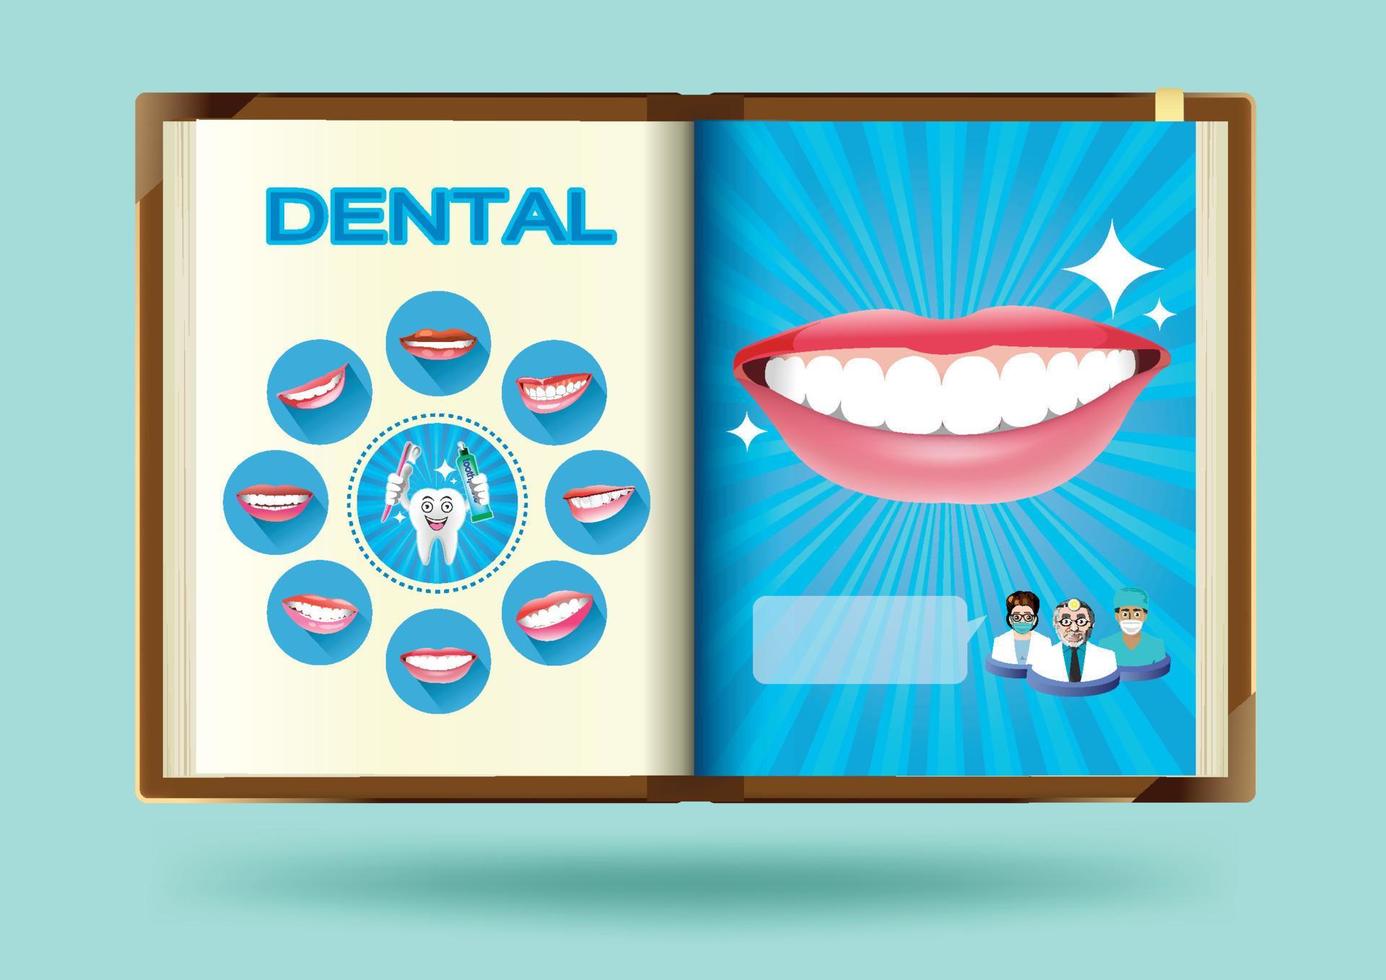 Dental set on notebook page vector illustration